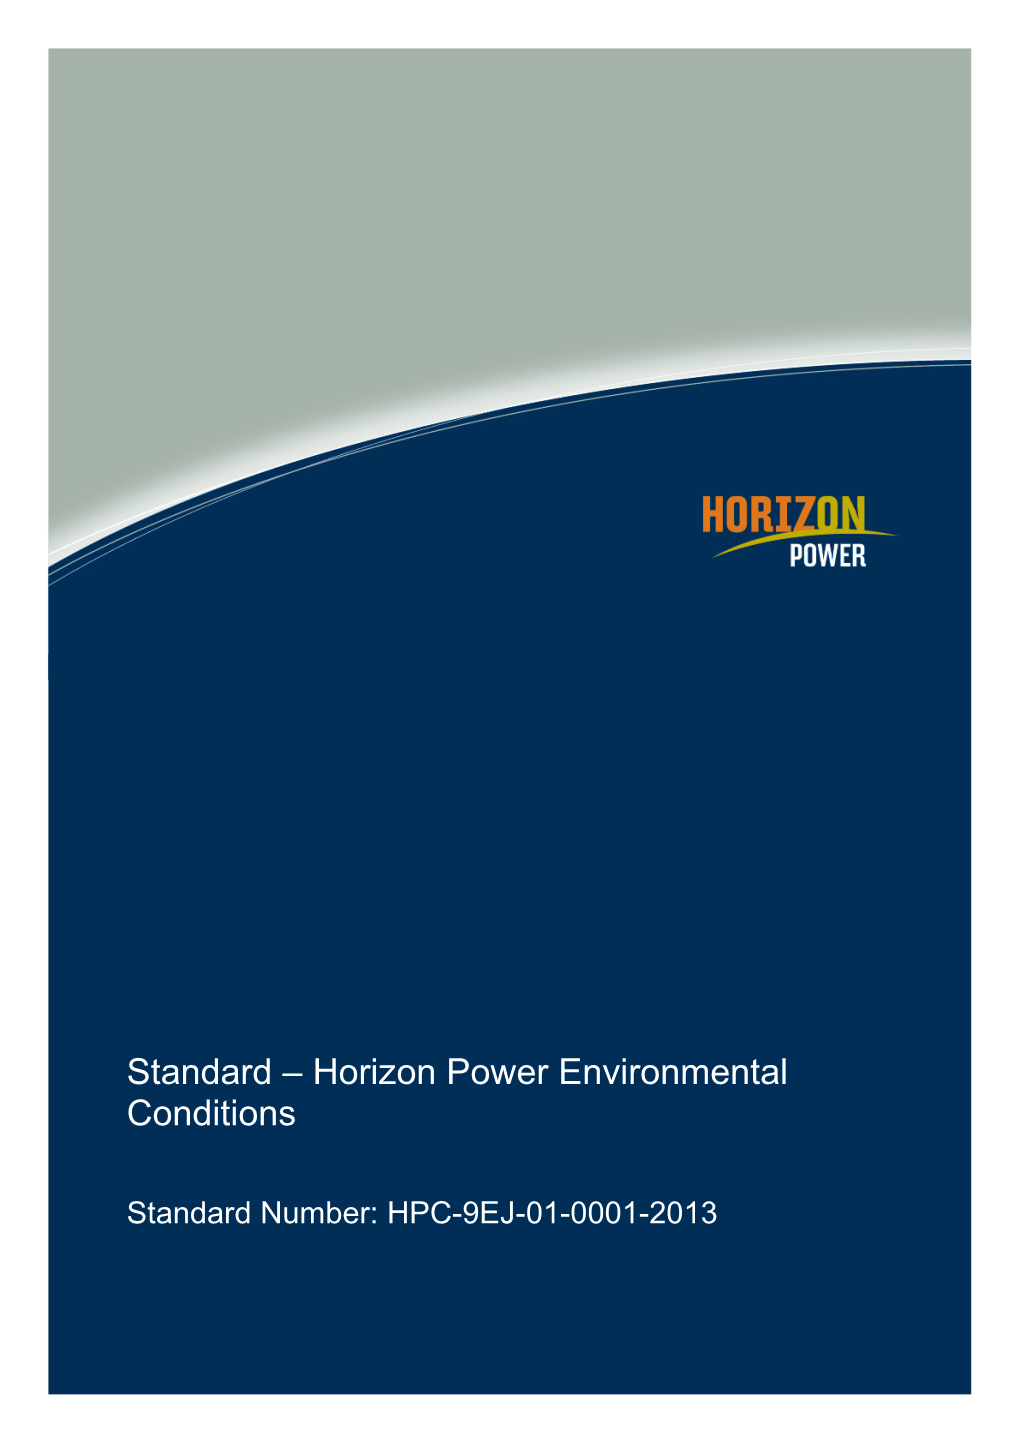 Standard Number: HPC-9EJ-01-0001-2013